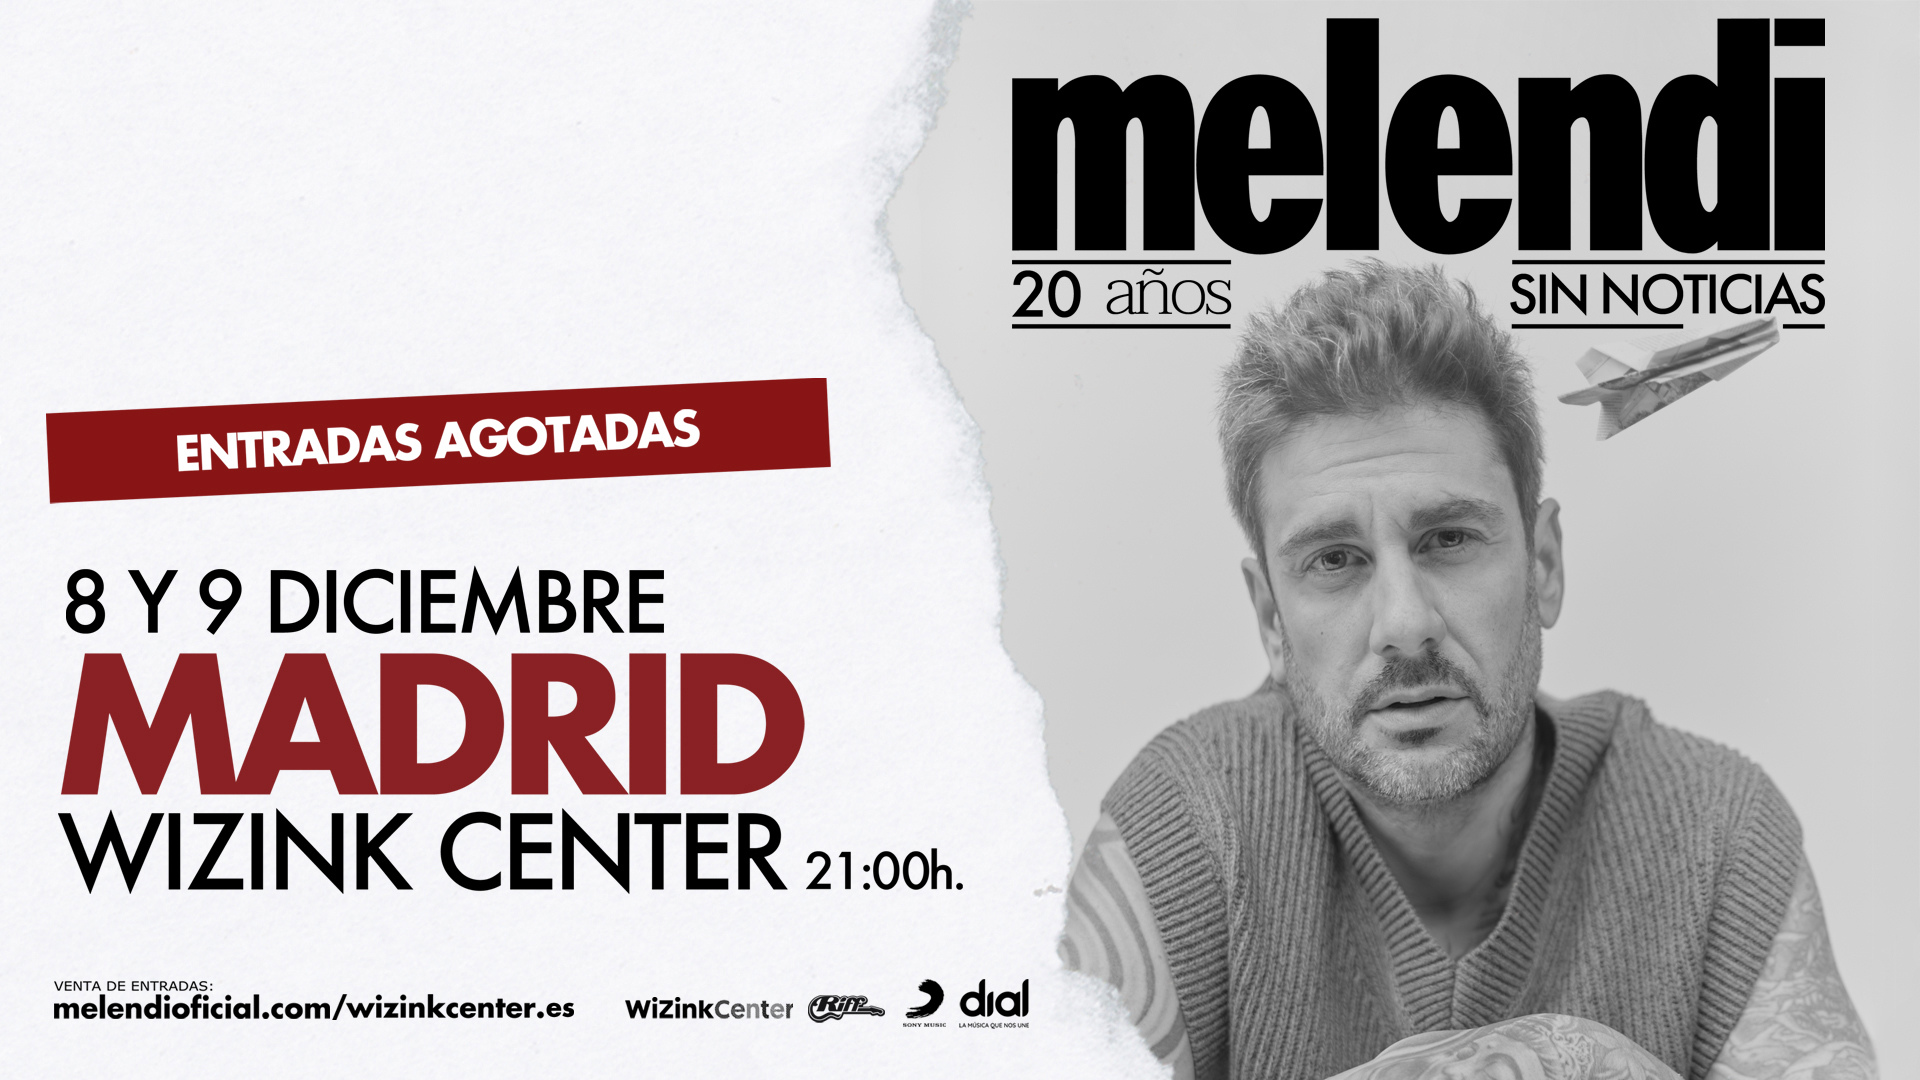 Melendi arrasa y vende más de 80.000 entradas de su nueva gira en apenas horas